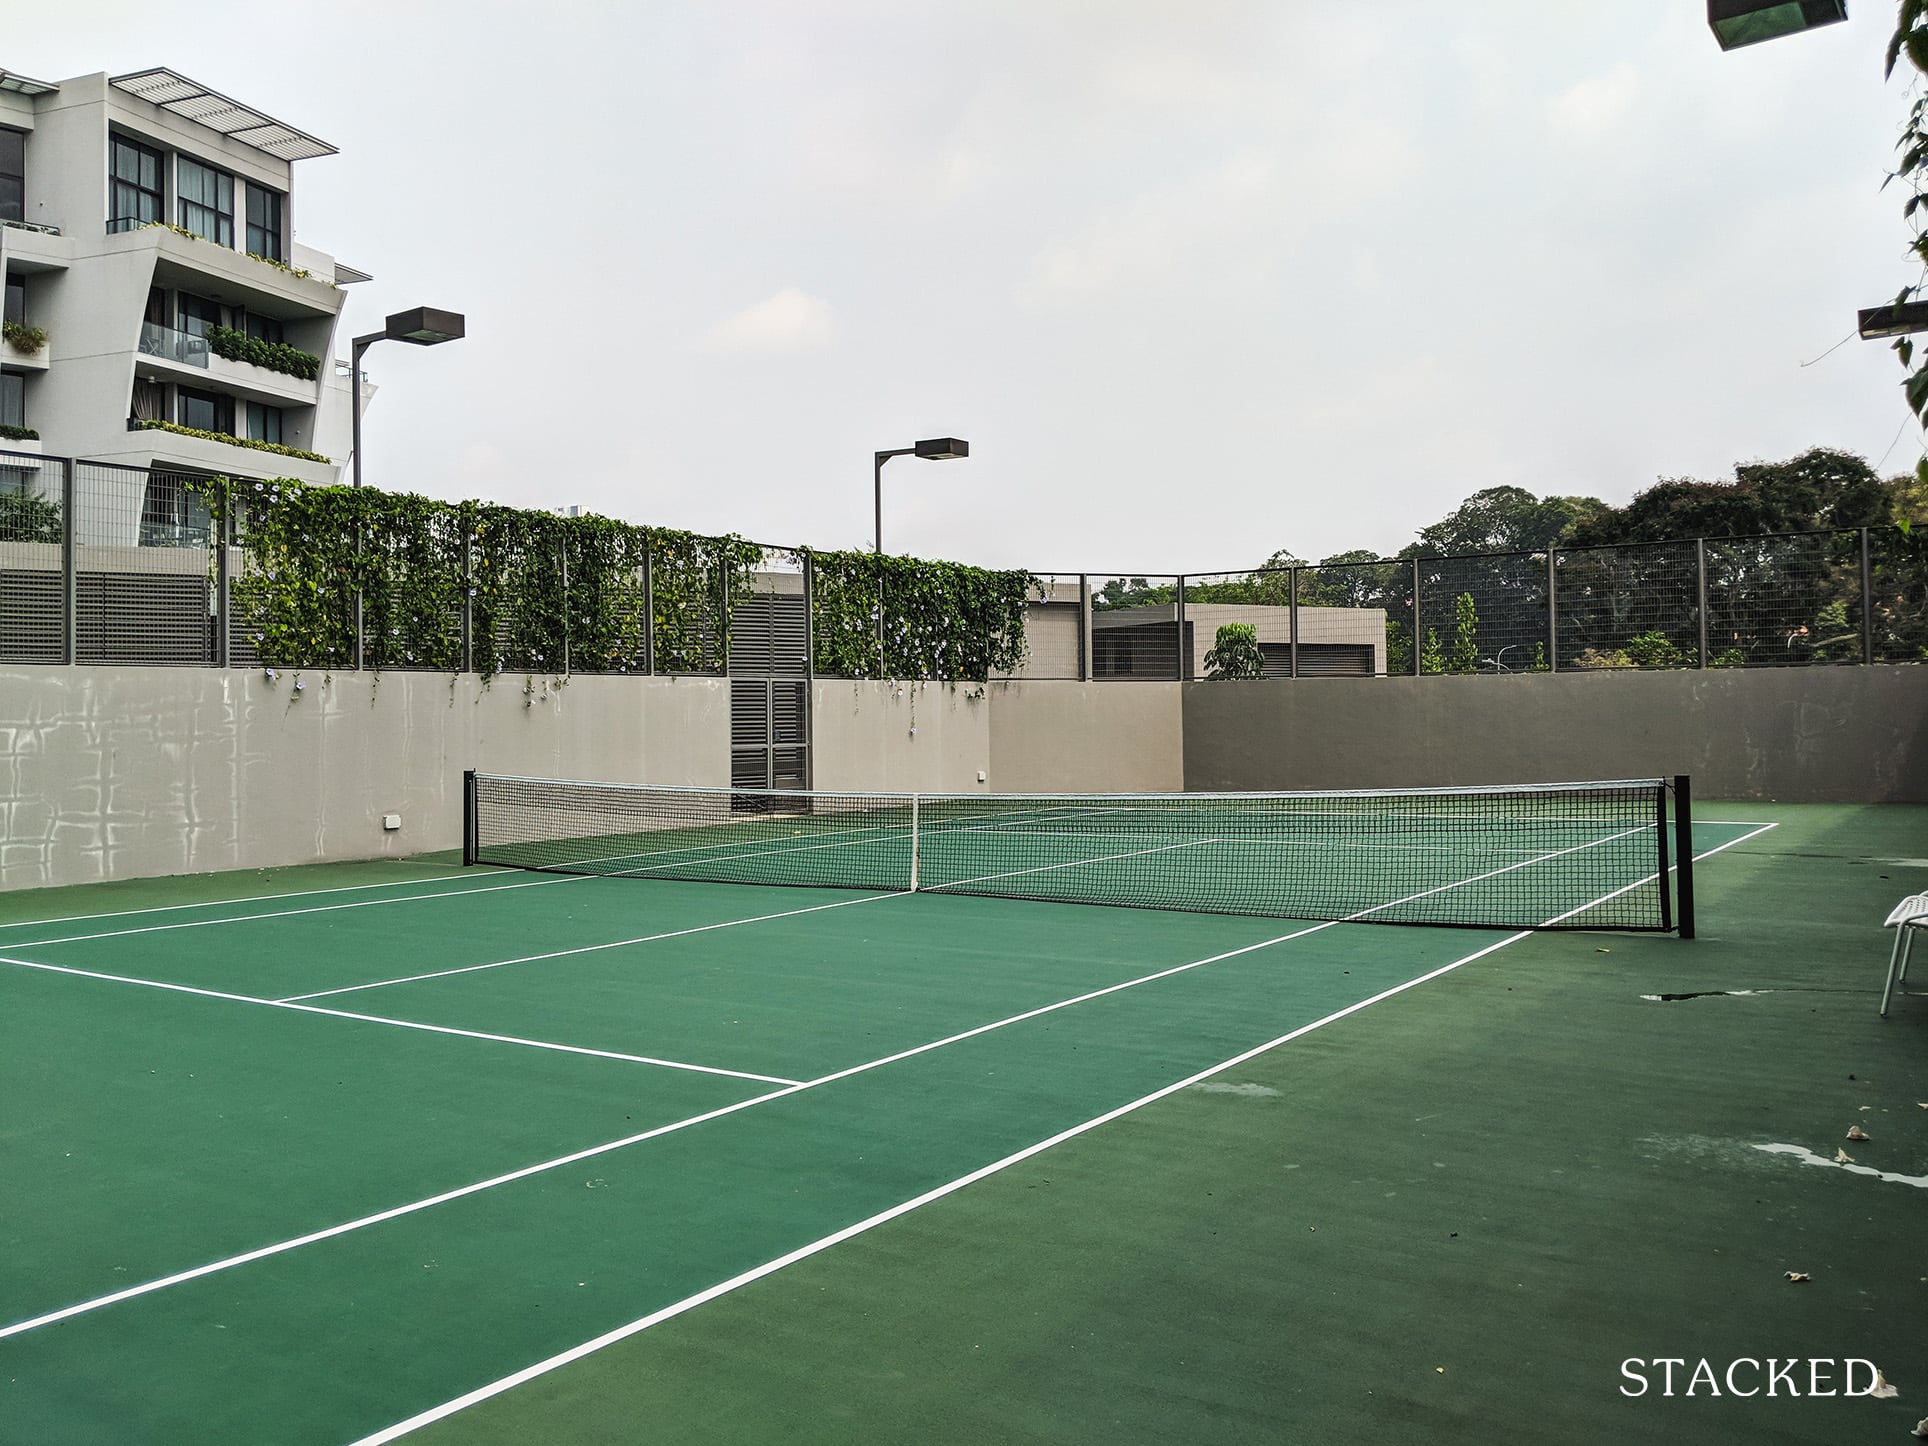 Principal Garden tennis court